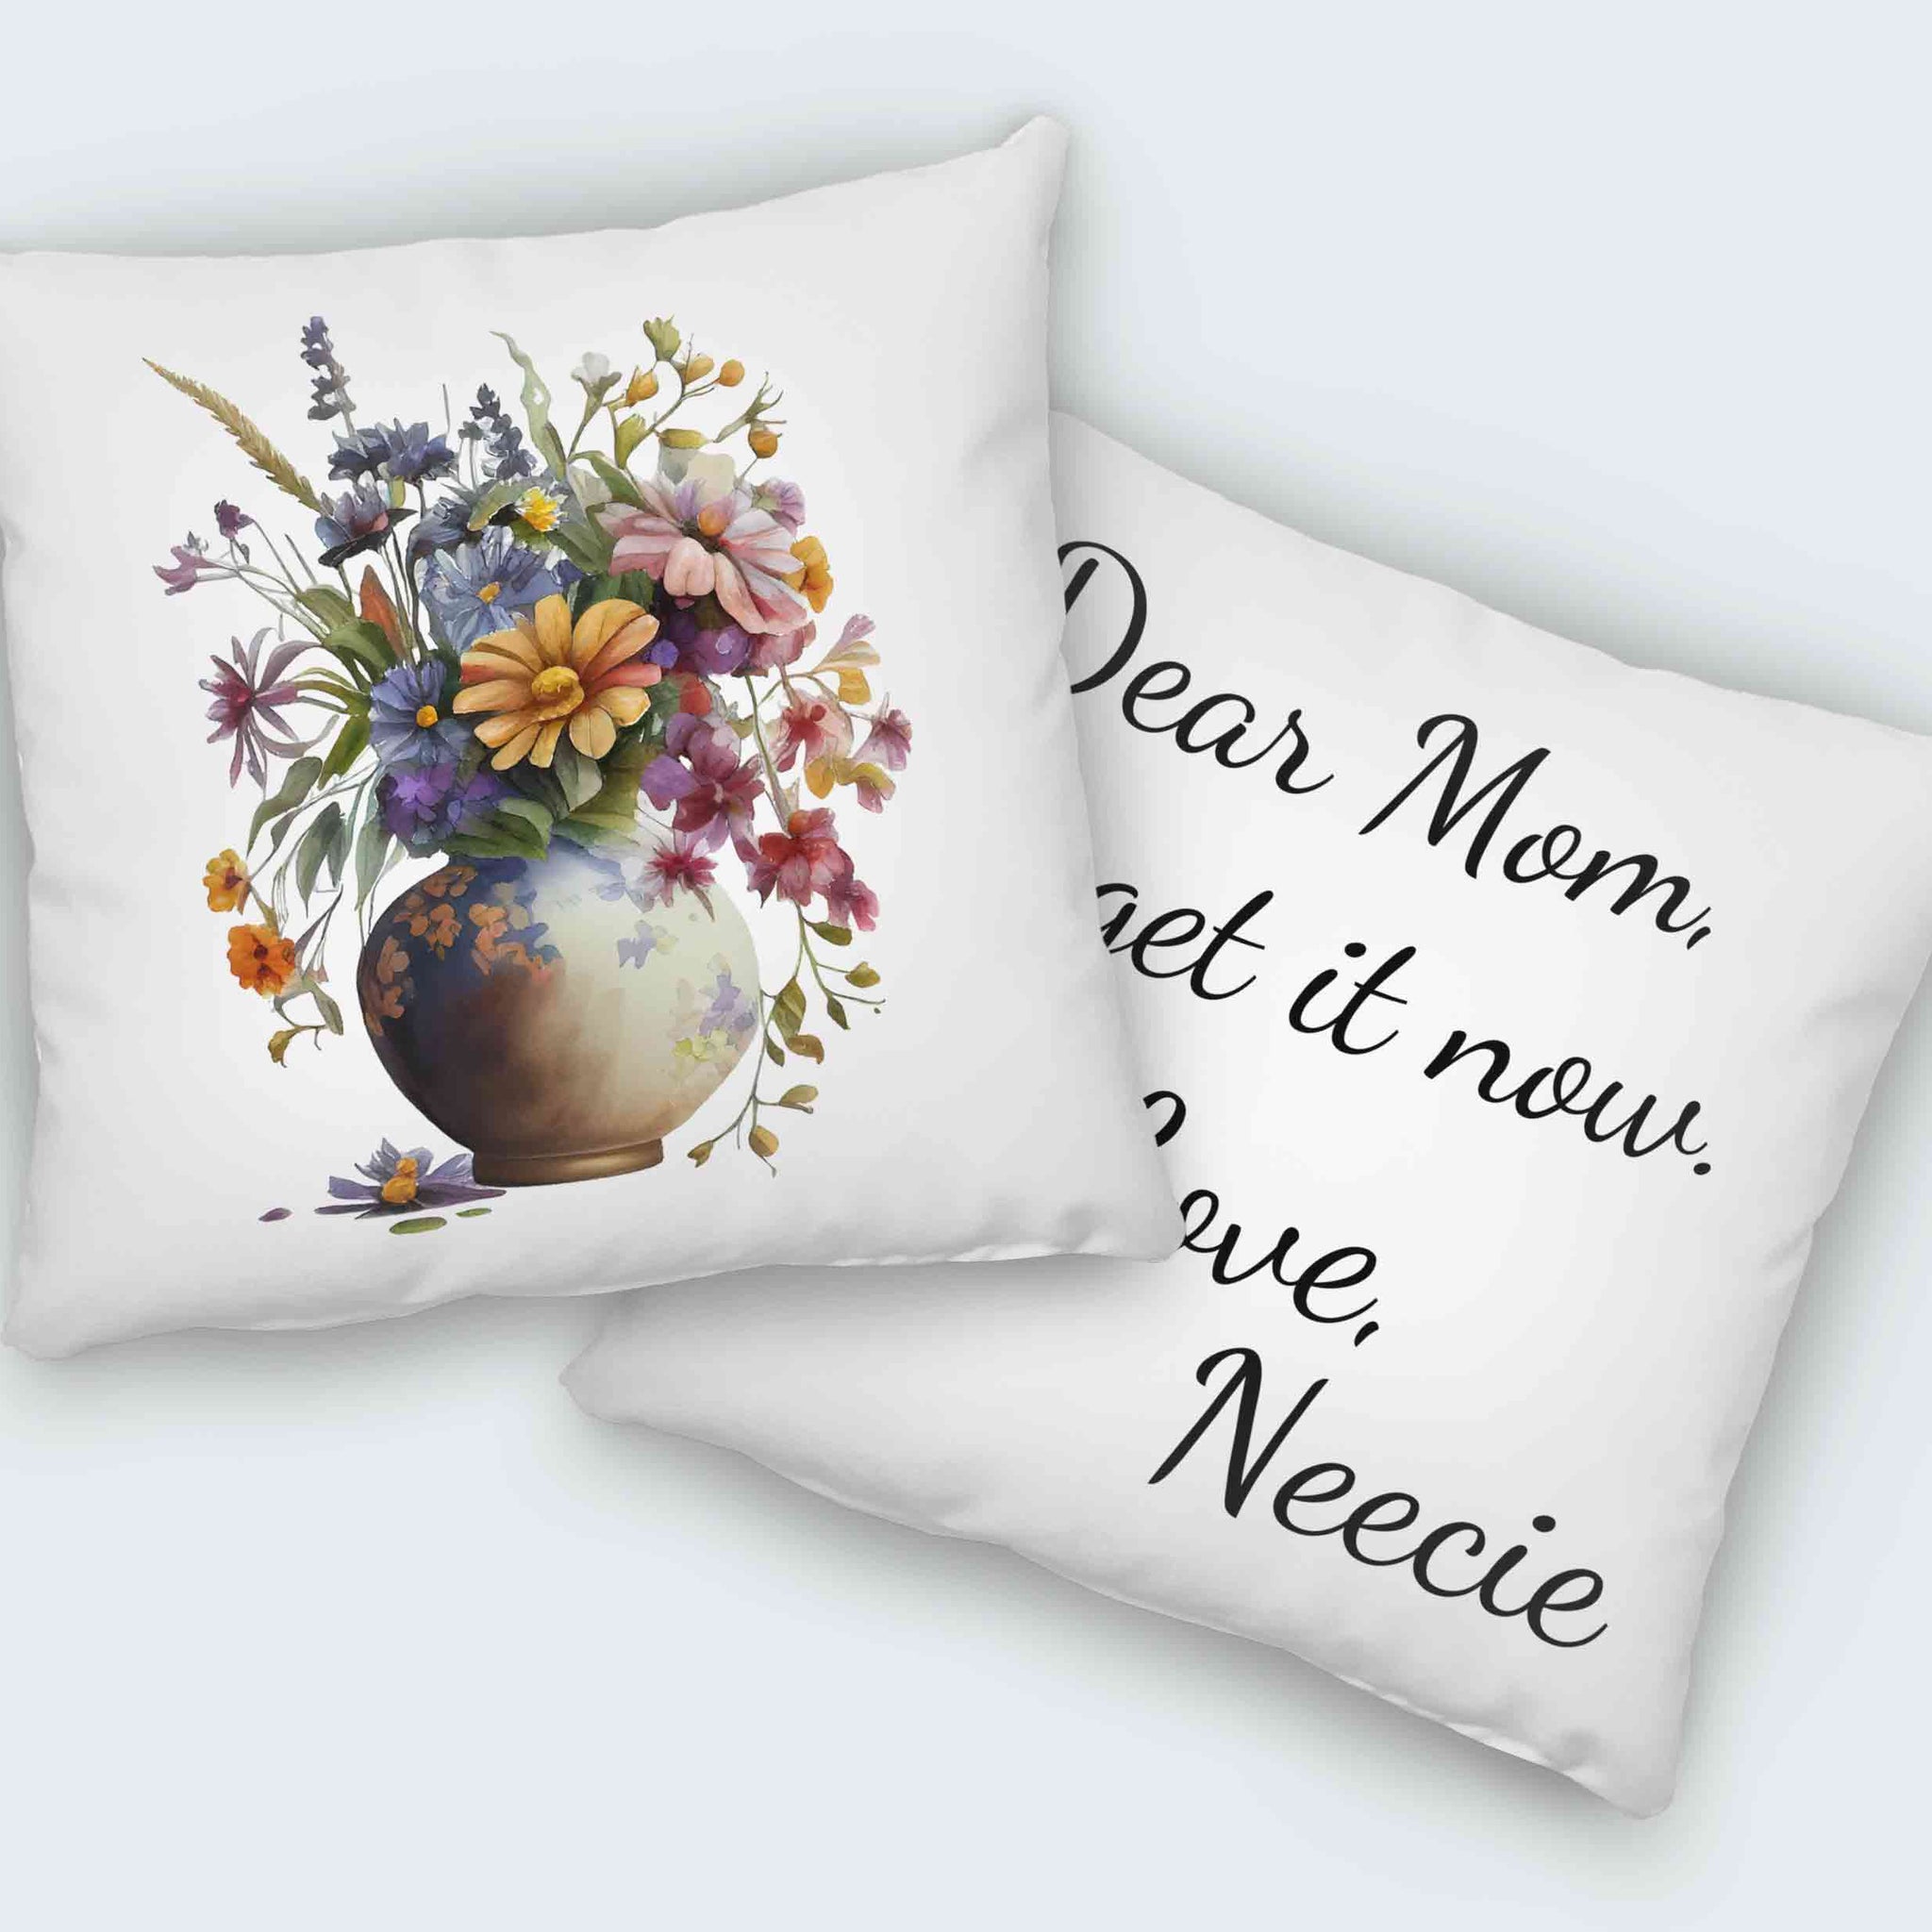 Dear Mom Pillow, Flower Mom Pillow, Mother's Day Gift, Grandma Gift, Flower Pillow, Custom Name Pillow, Gift For Mom From Daughter